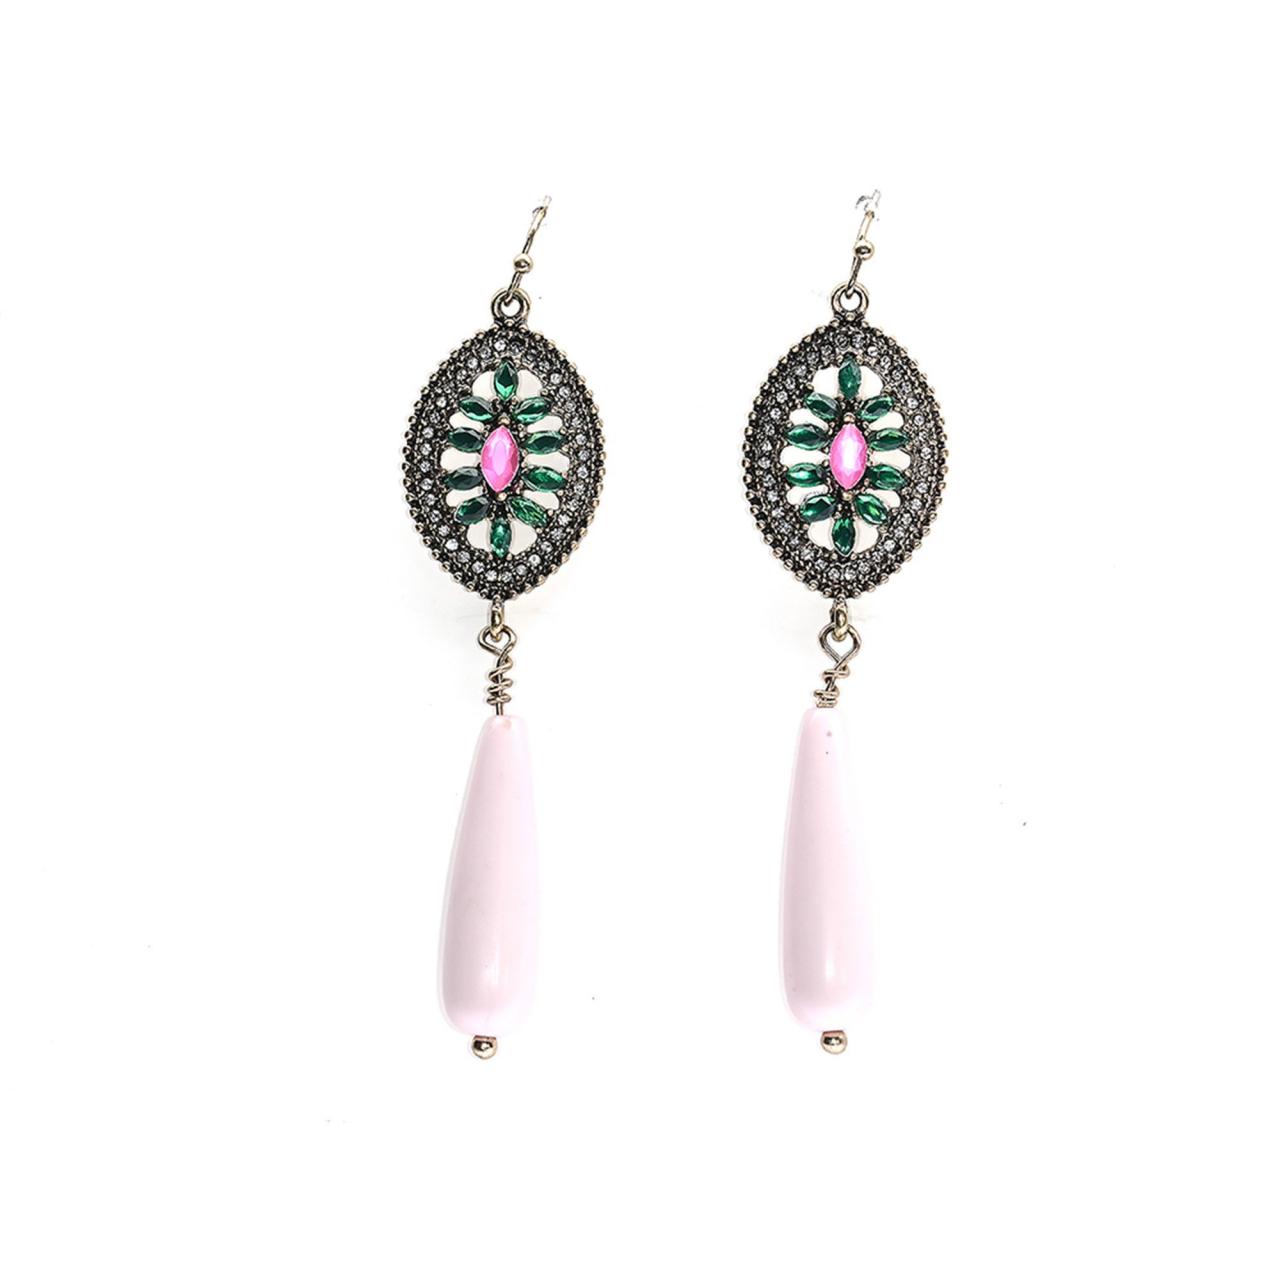 Vintage Earrings / Pink Earrings / Drop Earrings / Dangle Earrings / Princess Jewelry / Teardrop Earrings / Stained Glass Earrings / Green